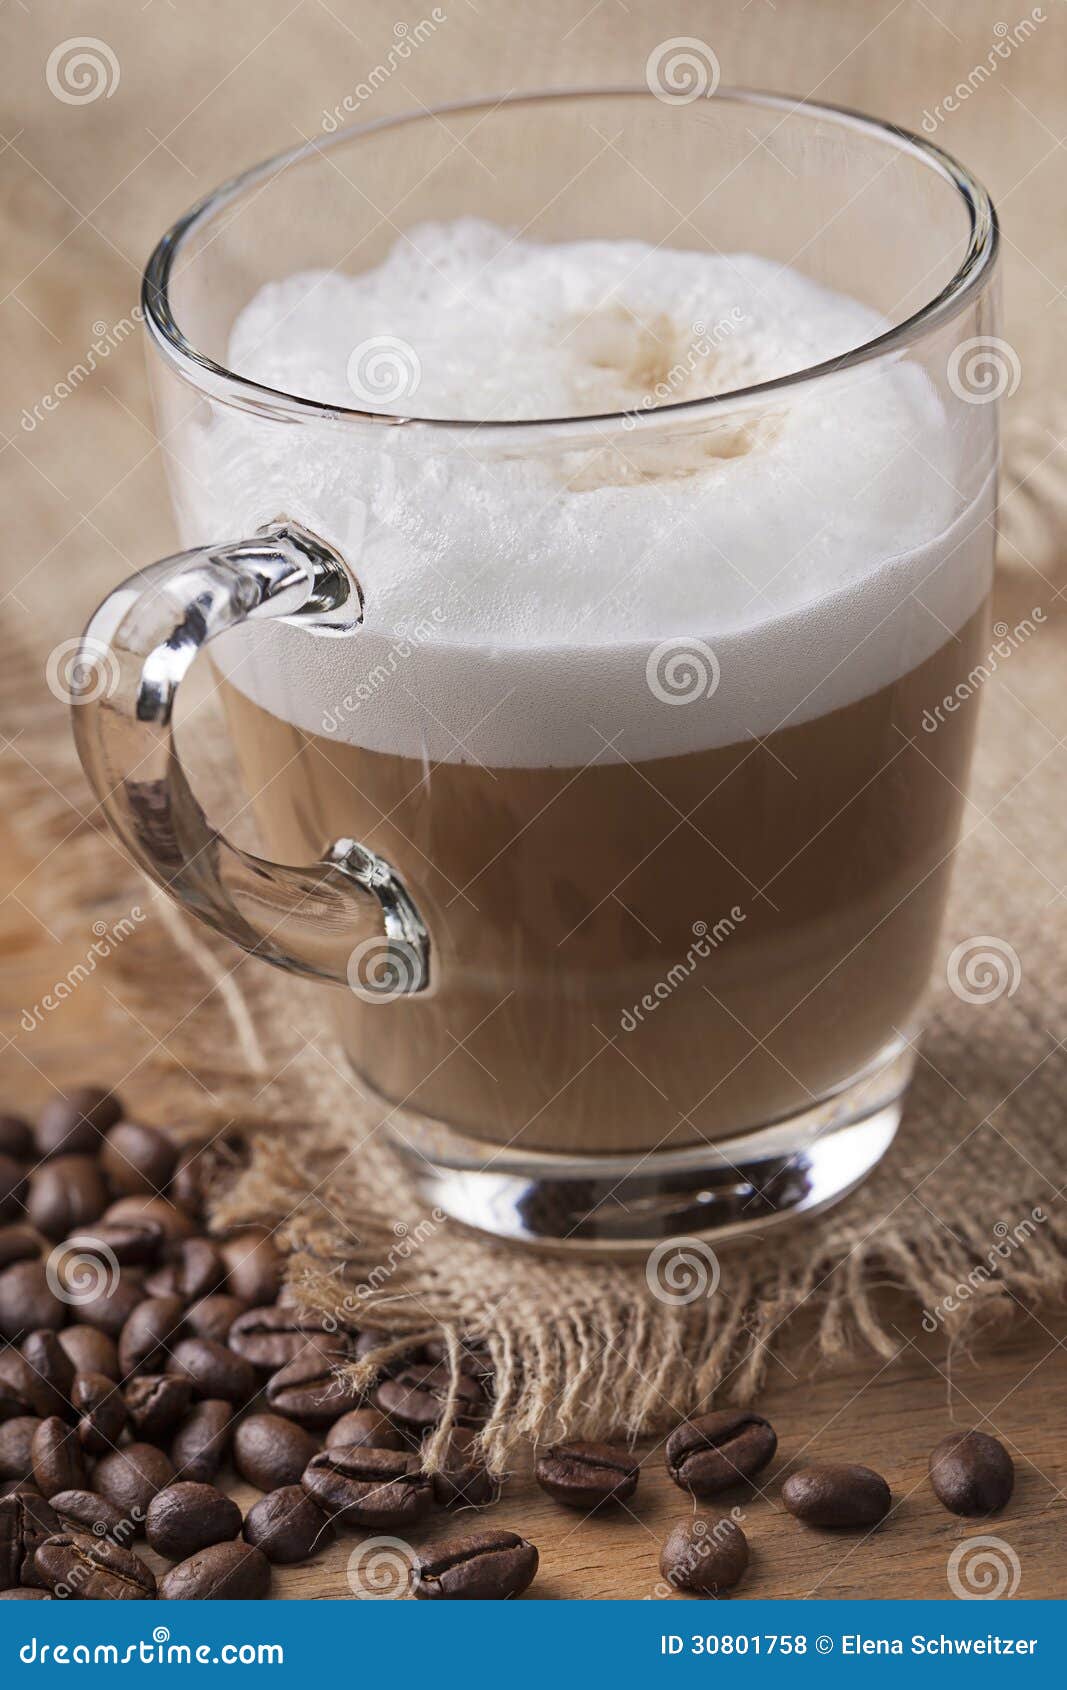 latte macchiato coffee